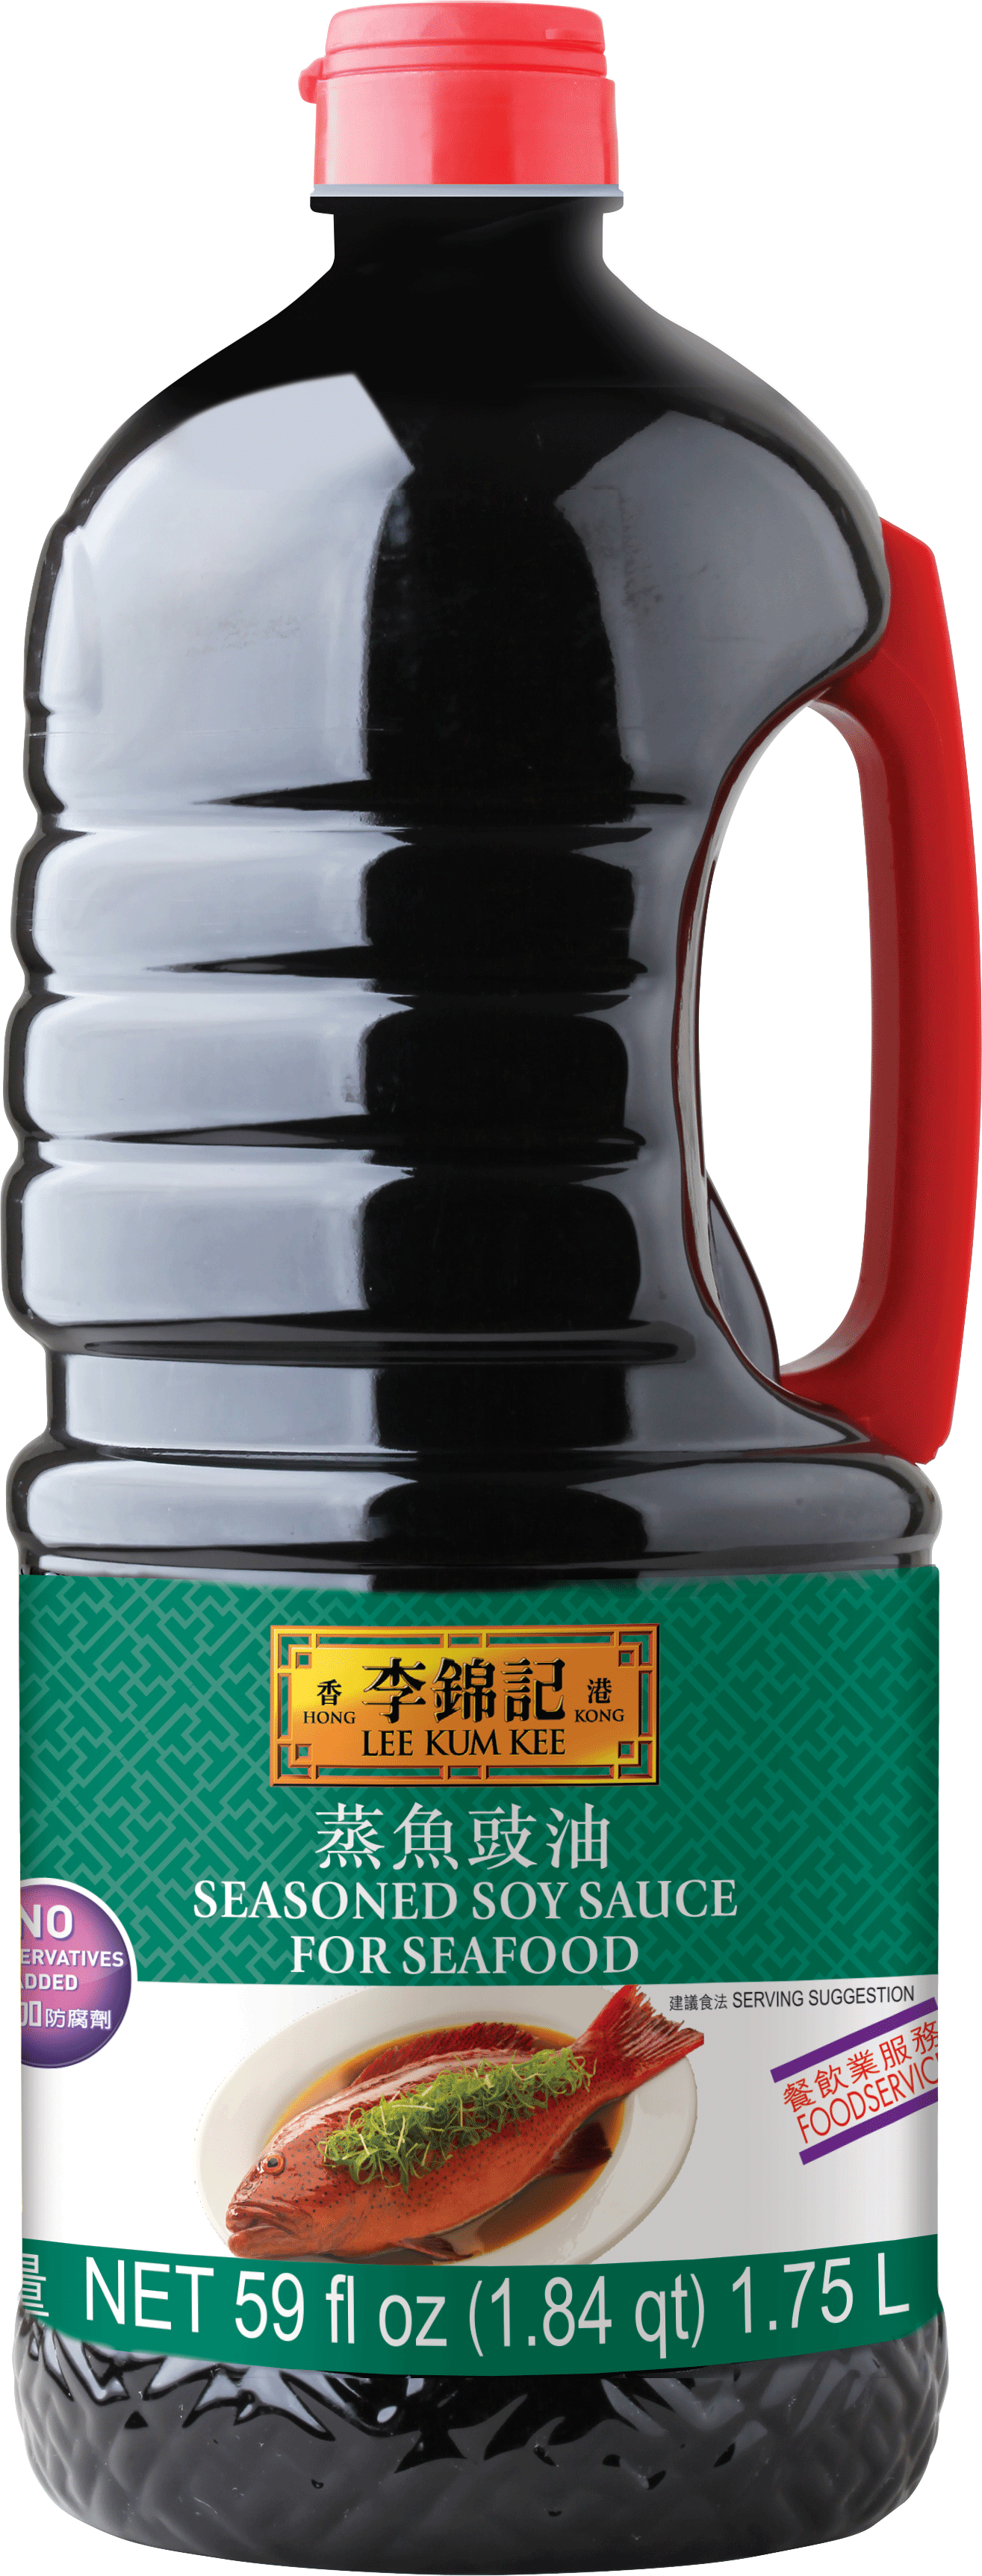 蒸魚豉油, 59 fl oz (1.84 qt), 桶裝